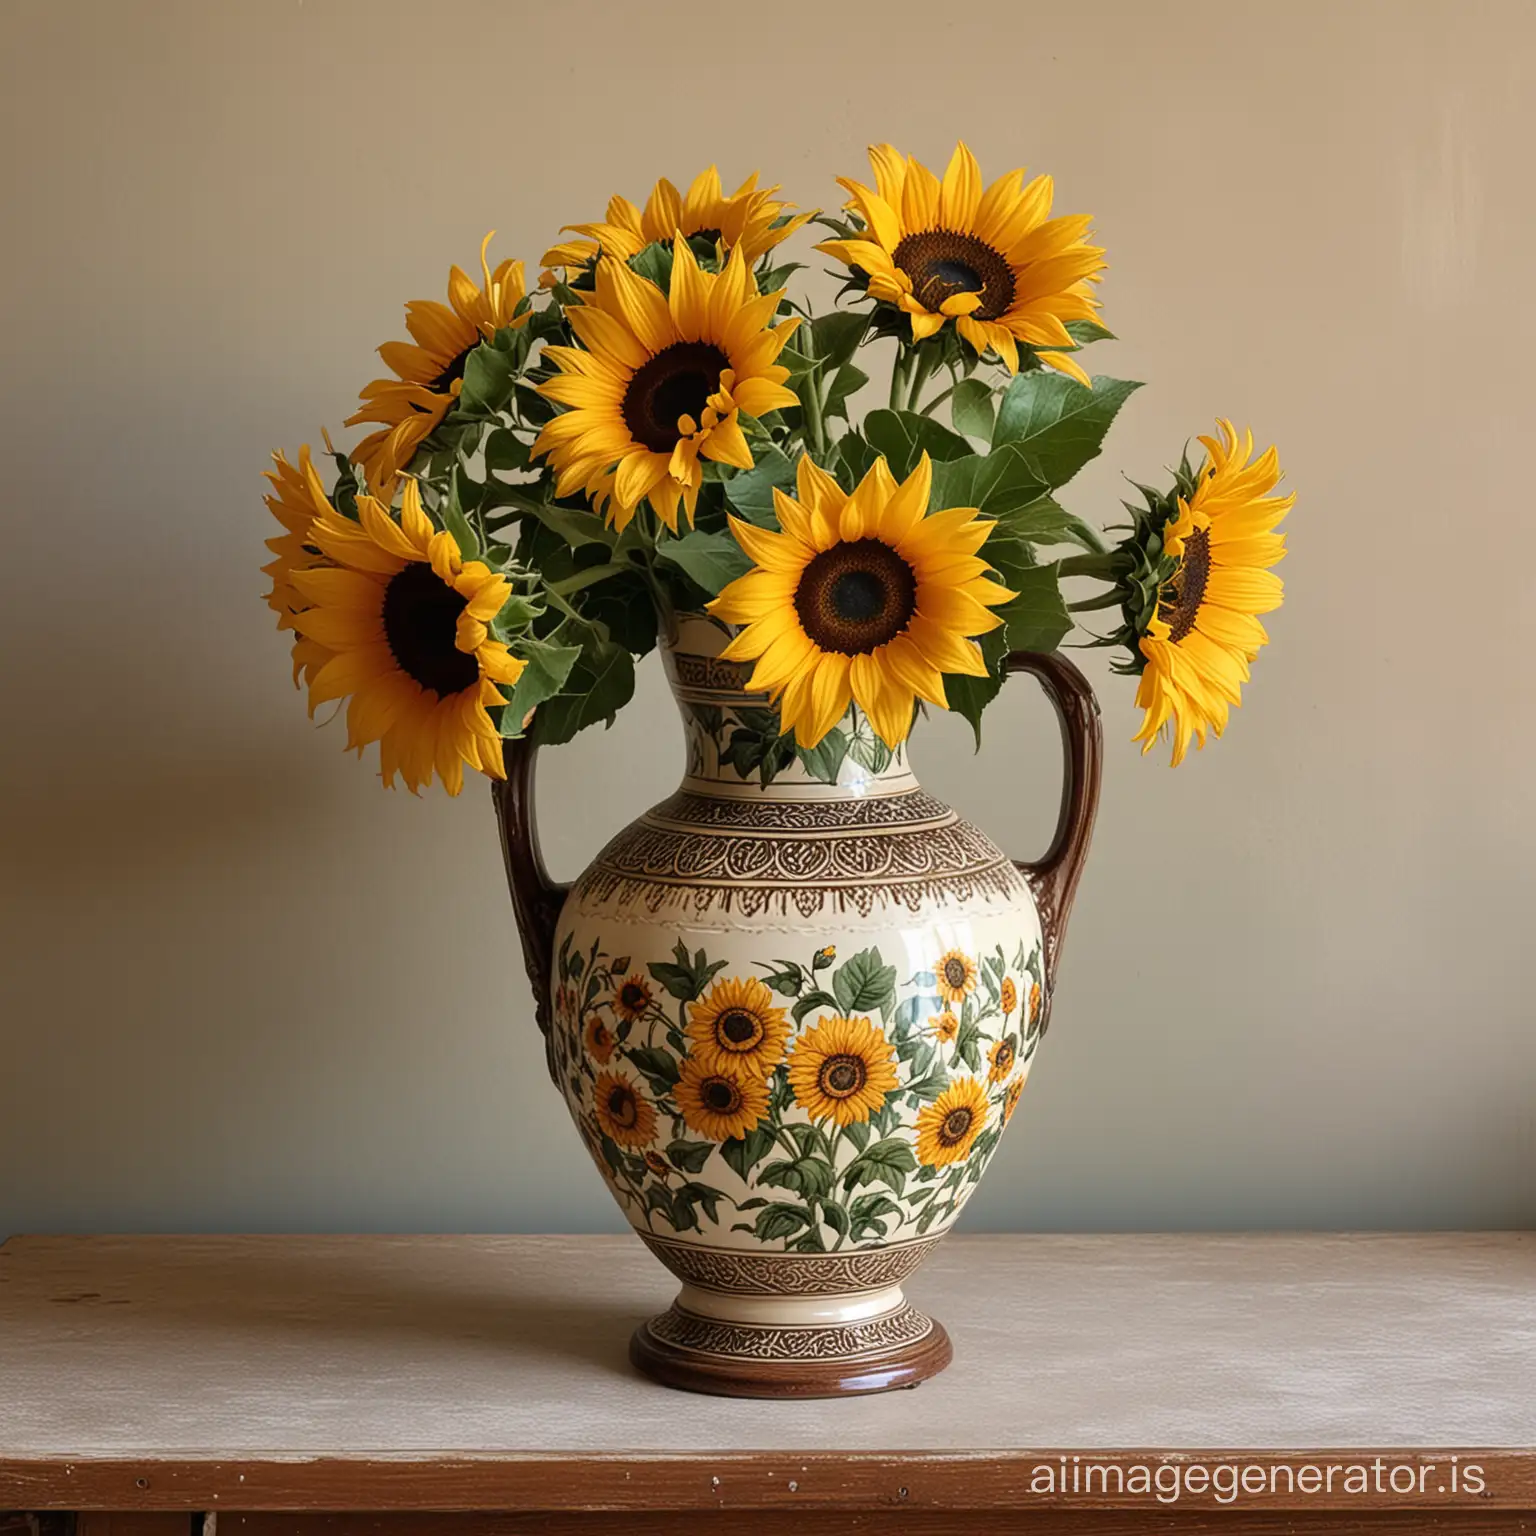 Elegant Antique Vase with Sunflowers